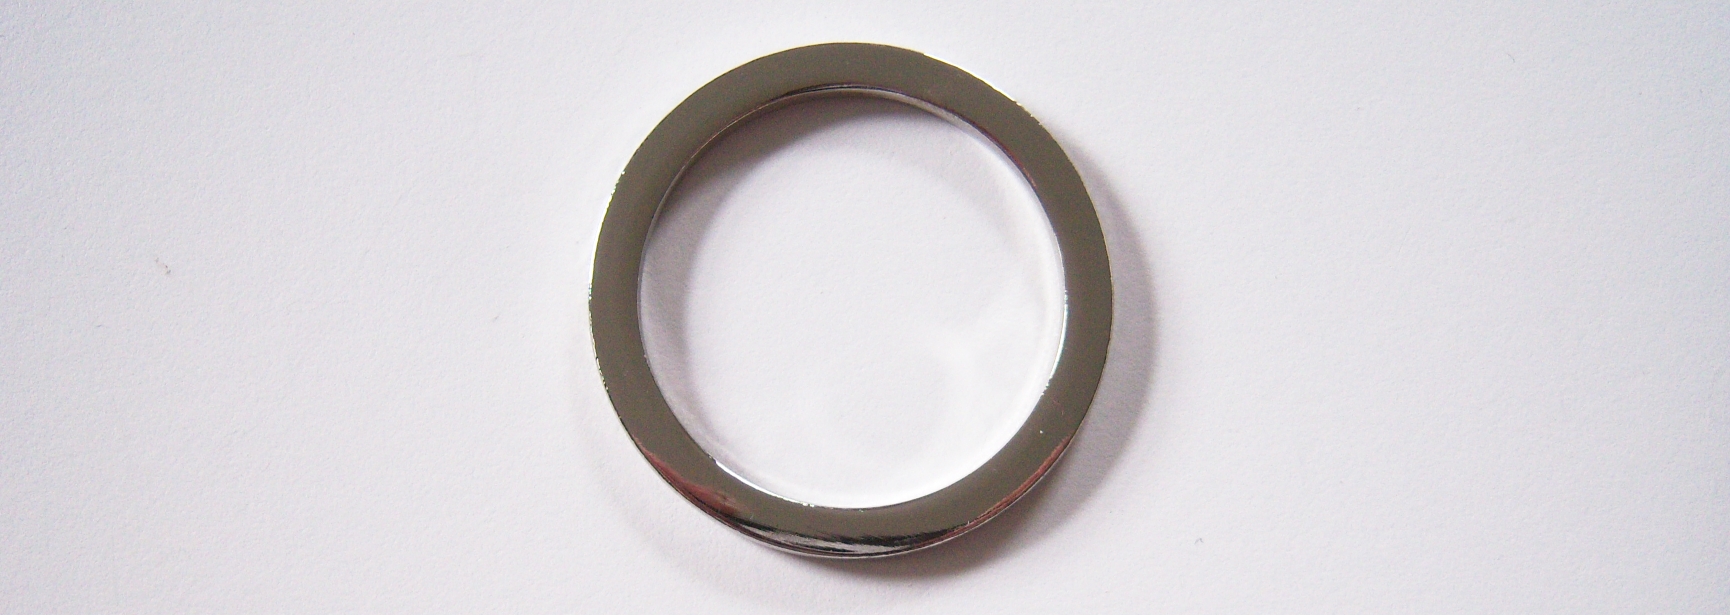 Nickel 3/16" x 1 7/8" Ring